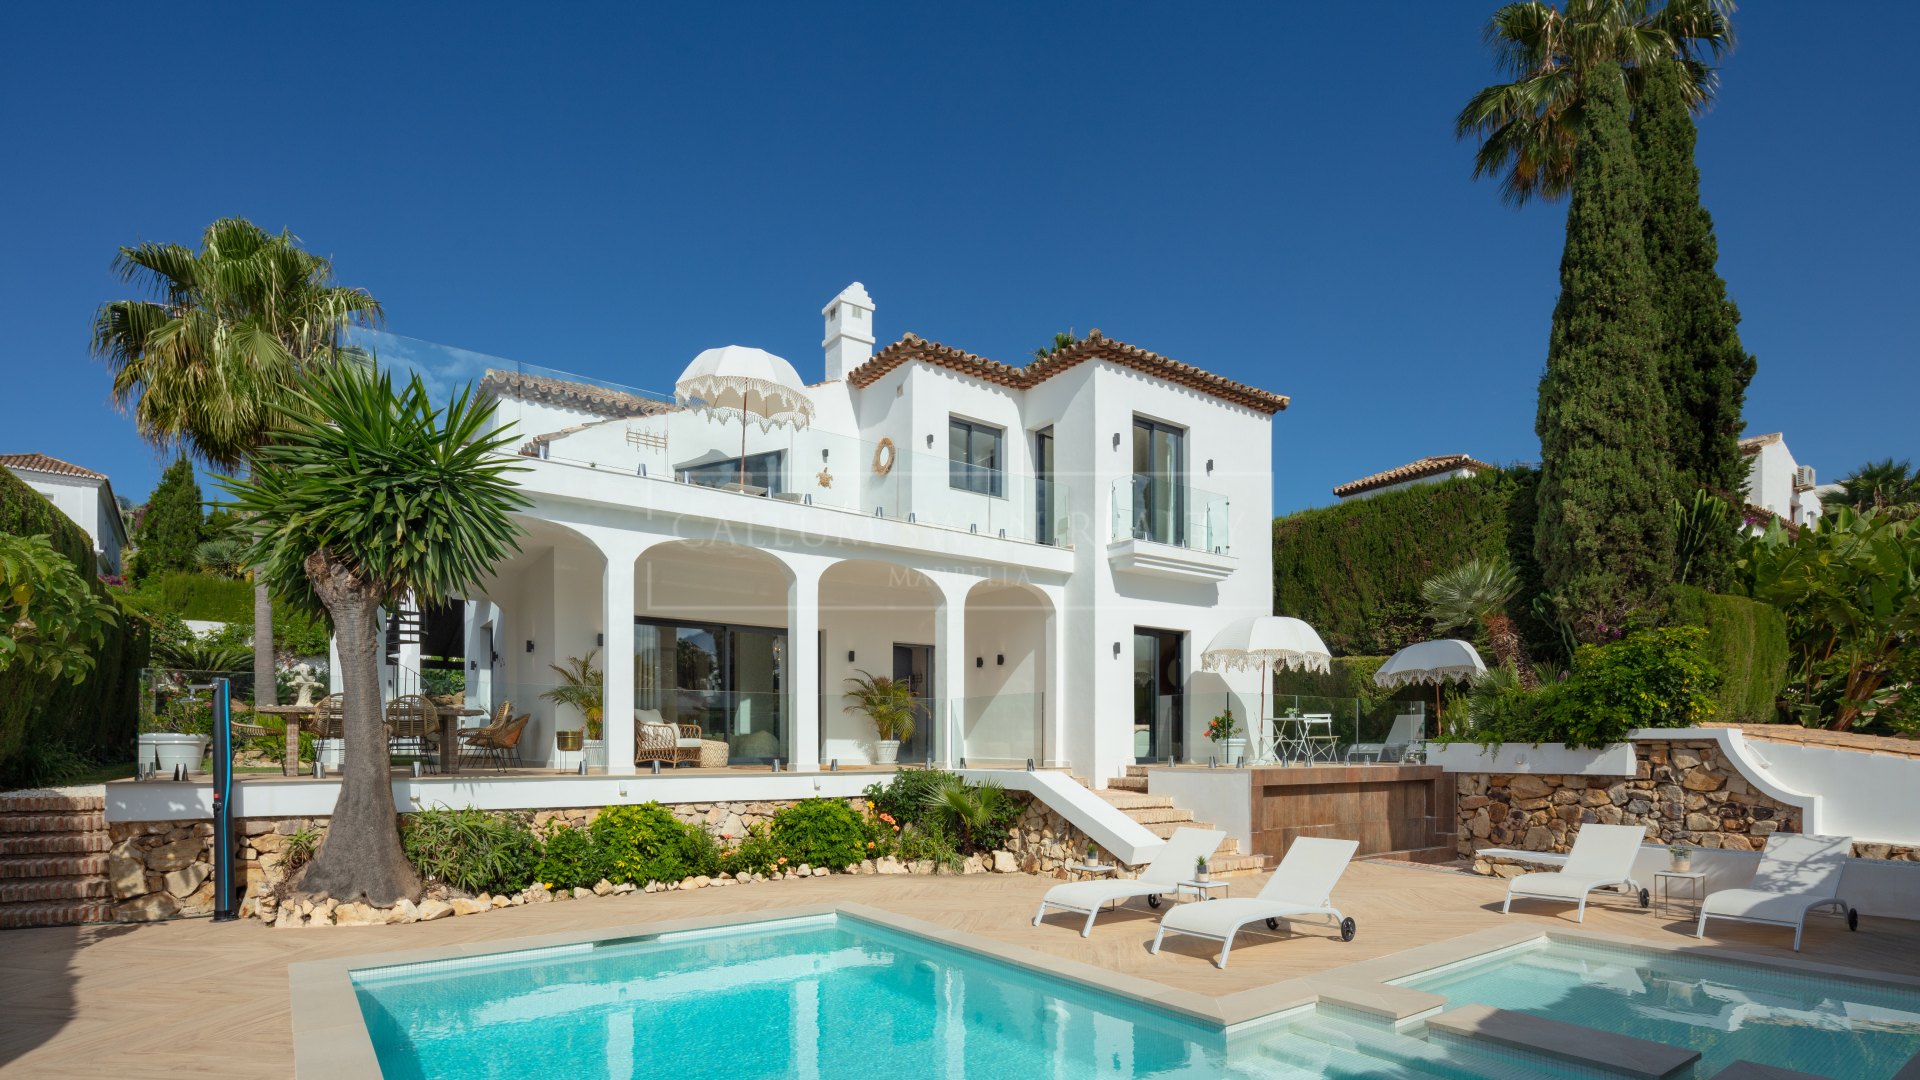 Encantadora villa familiar en Marbella Country Club